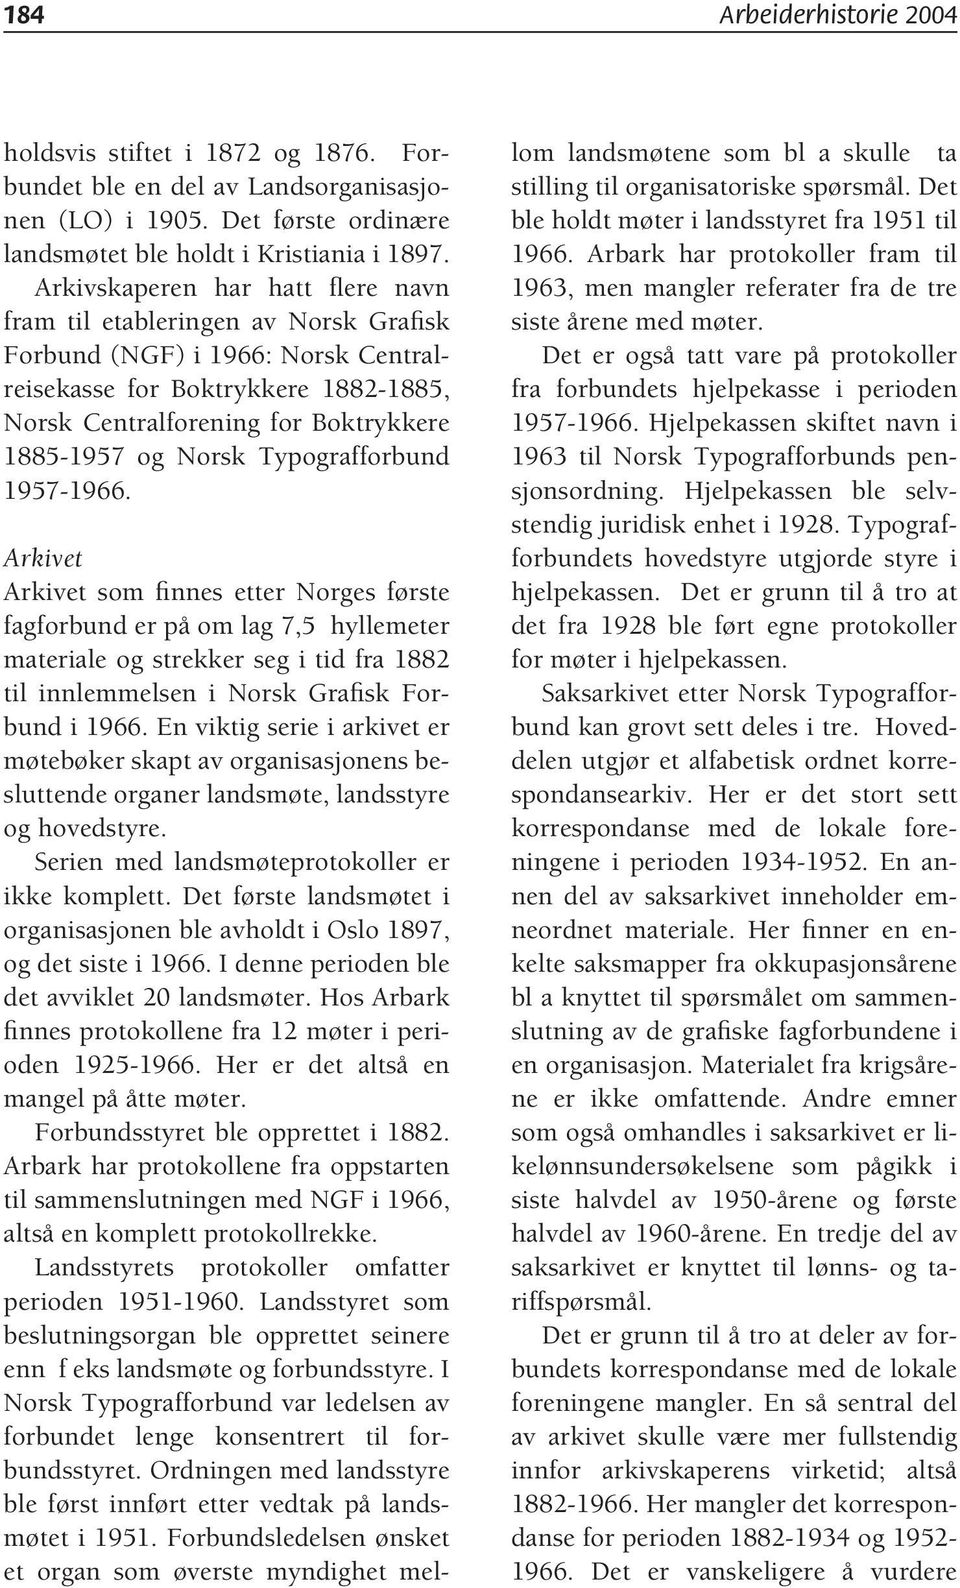 Norsk Typografforbund 1957-1966. som finnes etter Norges første fagforbund er på om lag 7,5 hyllemeter materiale og strekker seg i tid fra 1882 til innlemmelsen i Norsk Grafisk Forbund i 1966.